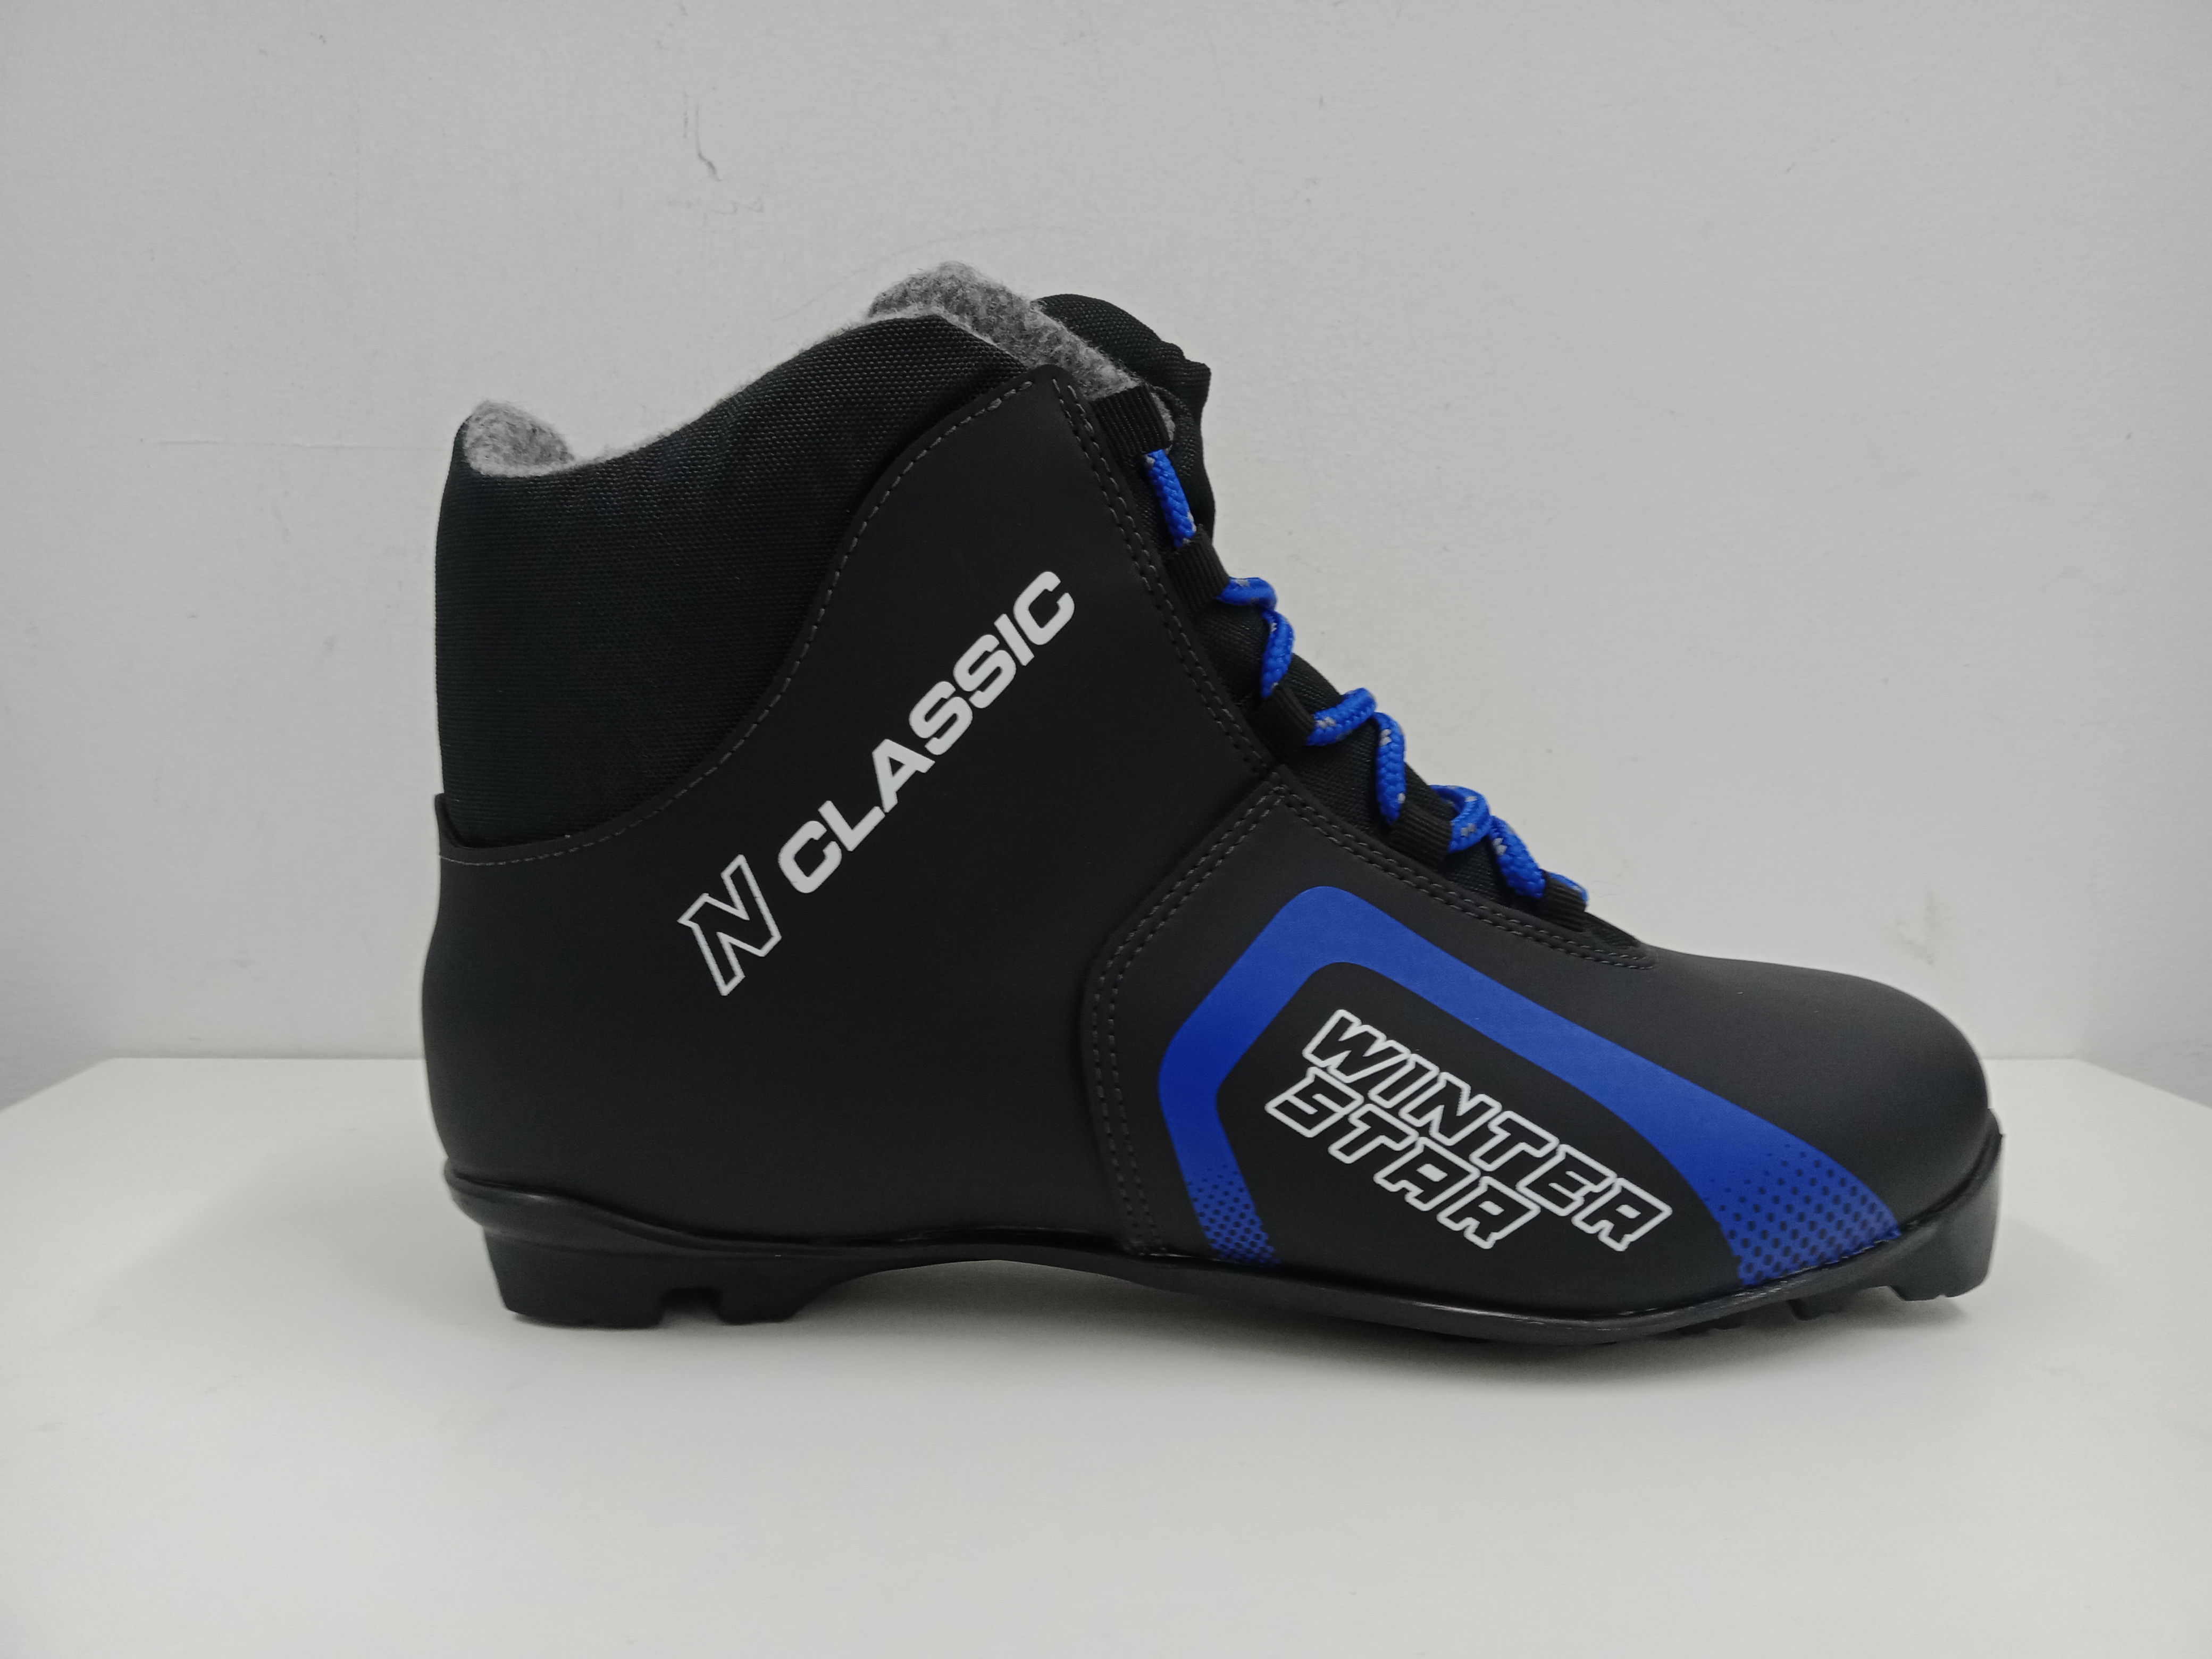 Ботинки лыжные Winter Star classic, NNN, цвет чёрный/синий